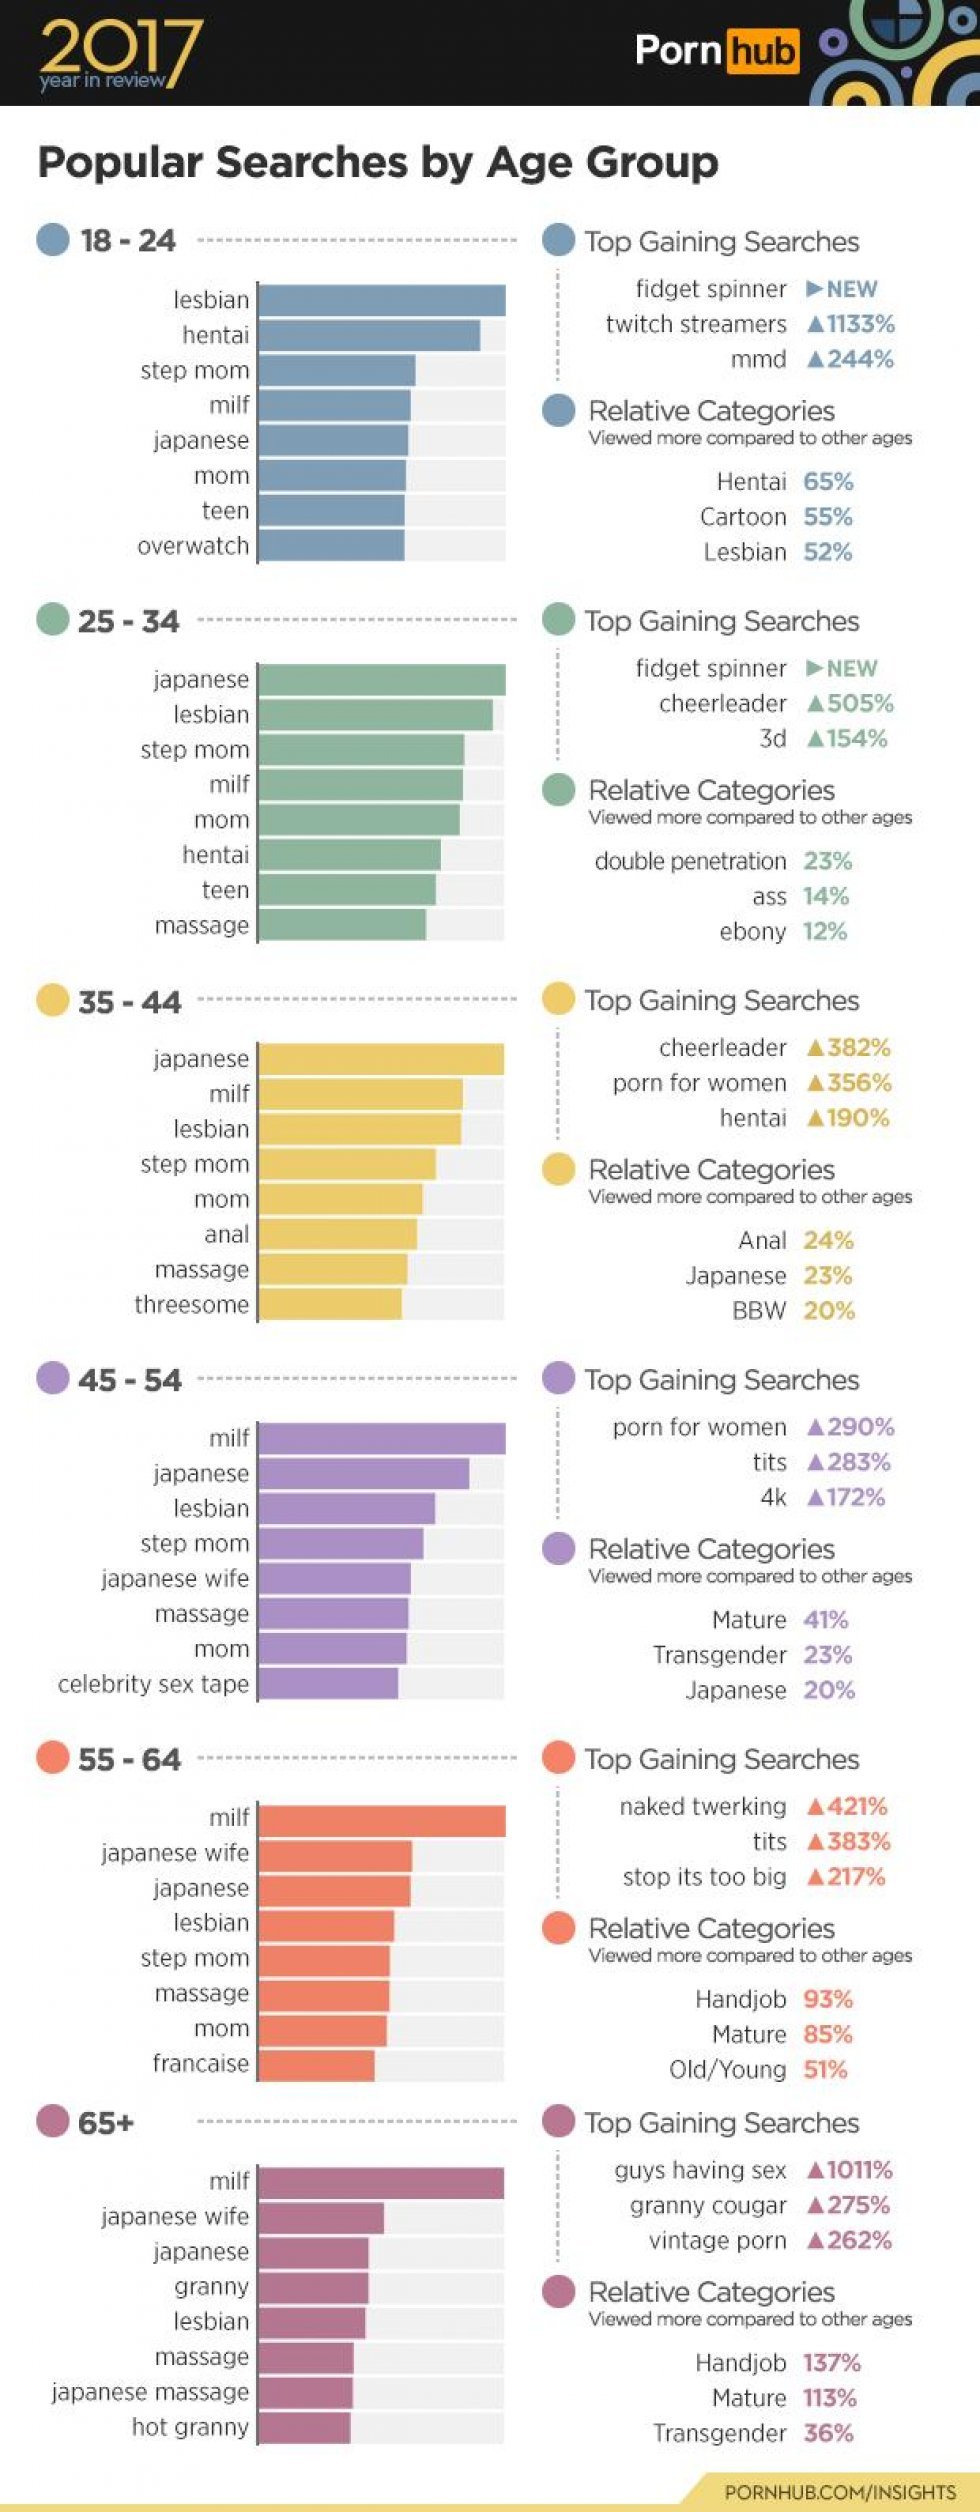 Pornhub offentliggør mest brugte søgeord fordelt på alder 